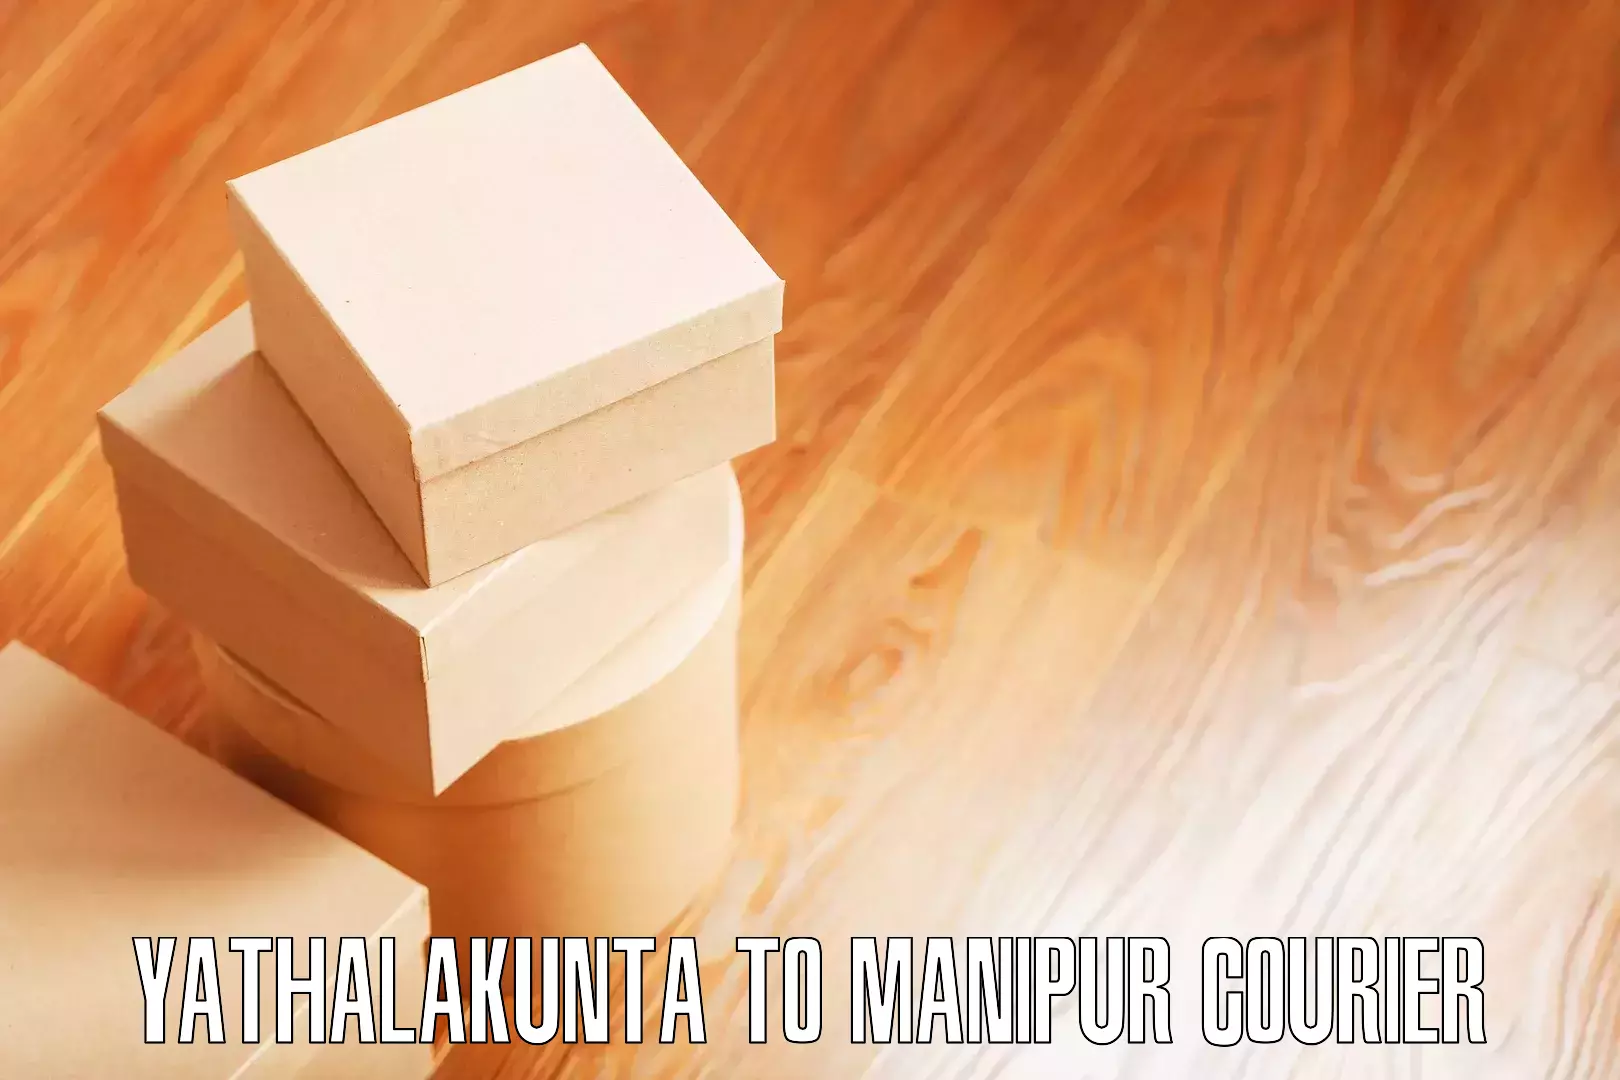 Stress-free moving Yathalakunta to Manipur